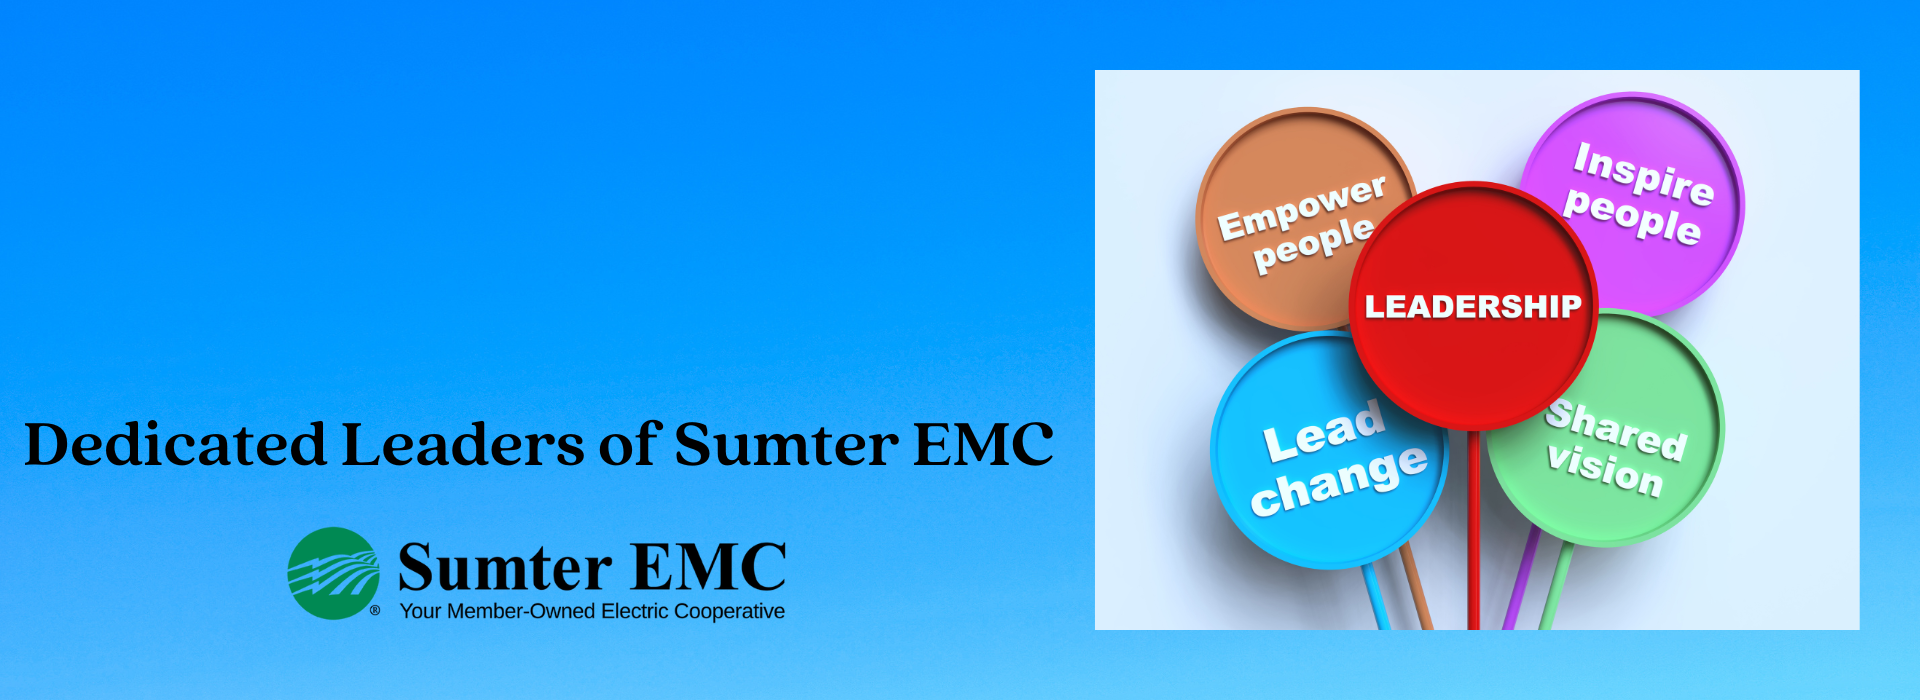 Dedicated Leaders of Sumter EMC